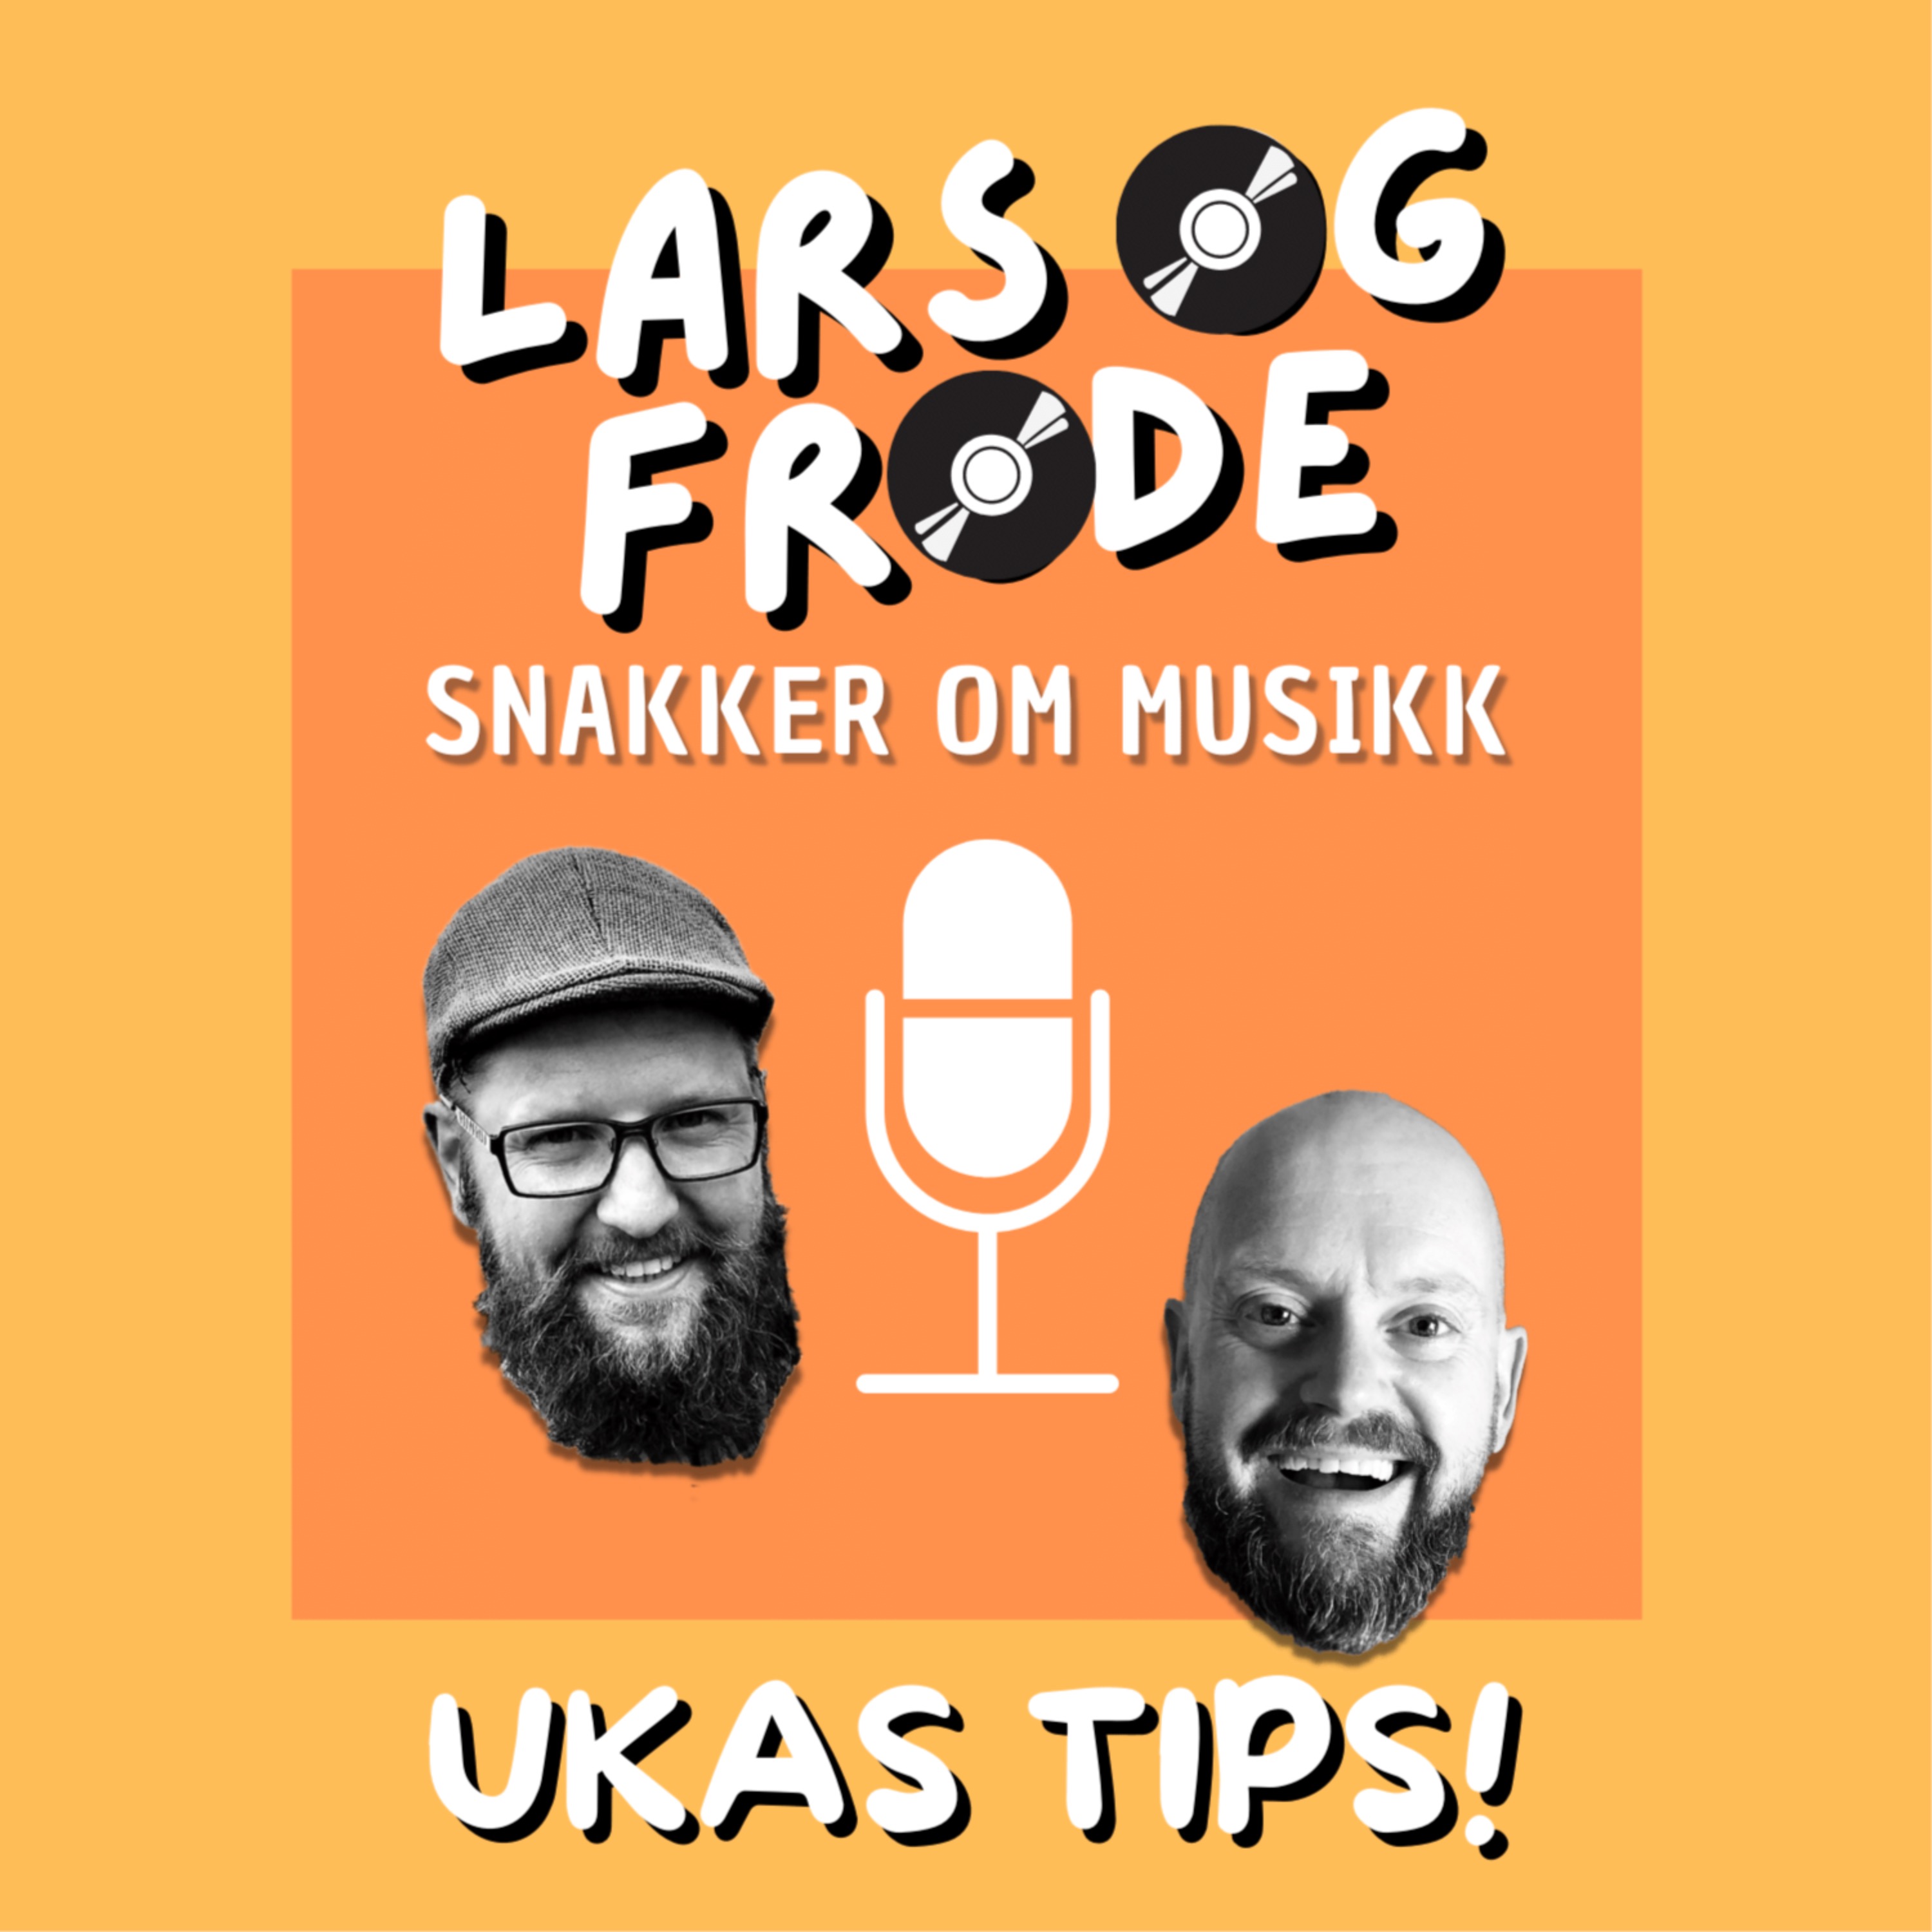 Ukas tips: Rå rock'n'roll! Image